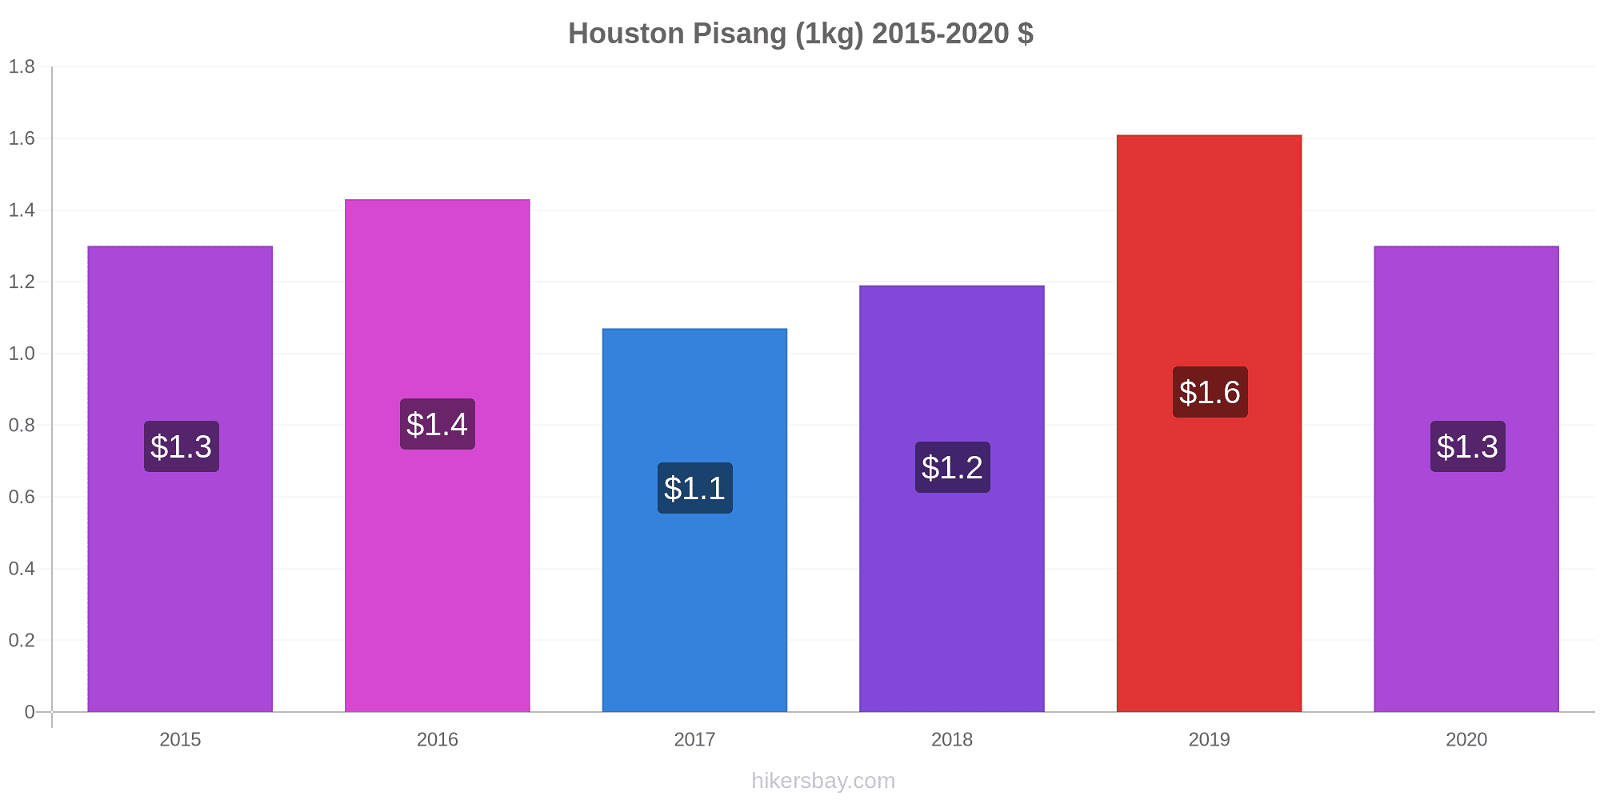 Houston perubahan harga Pisang (1kg) hikersbay.com